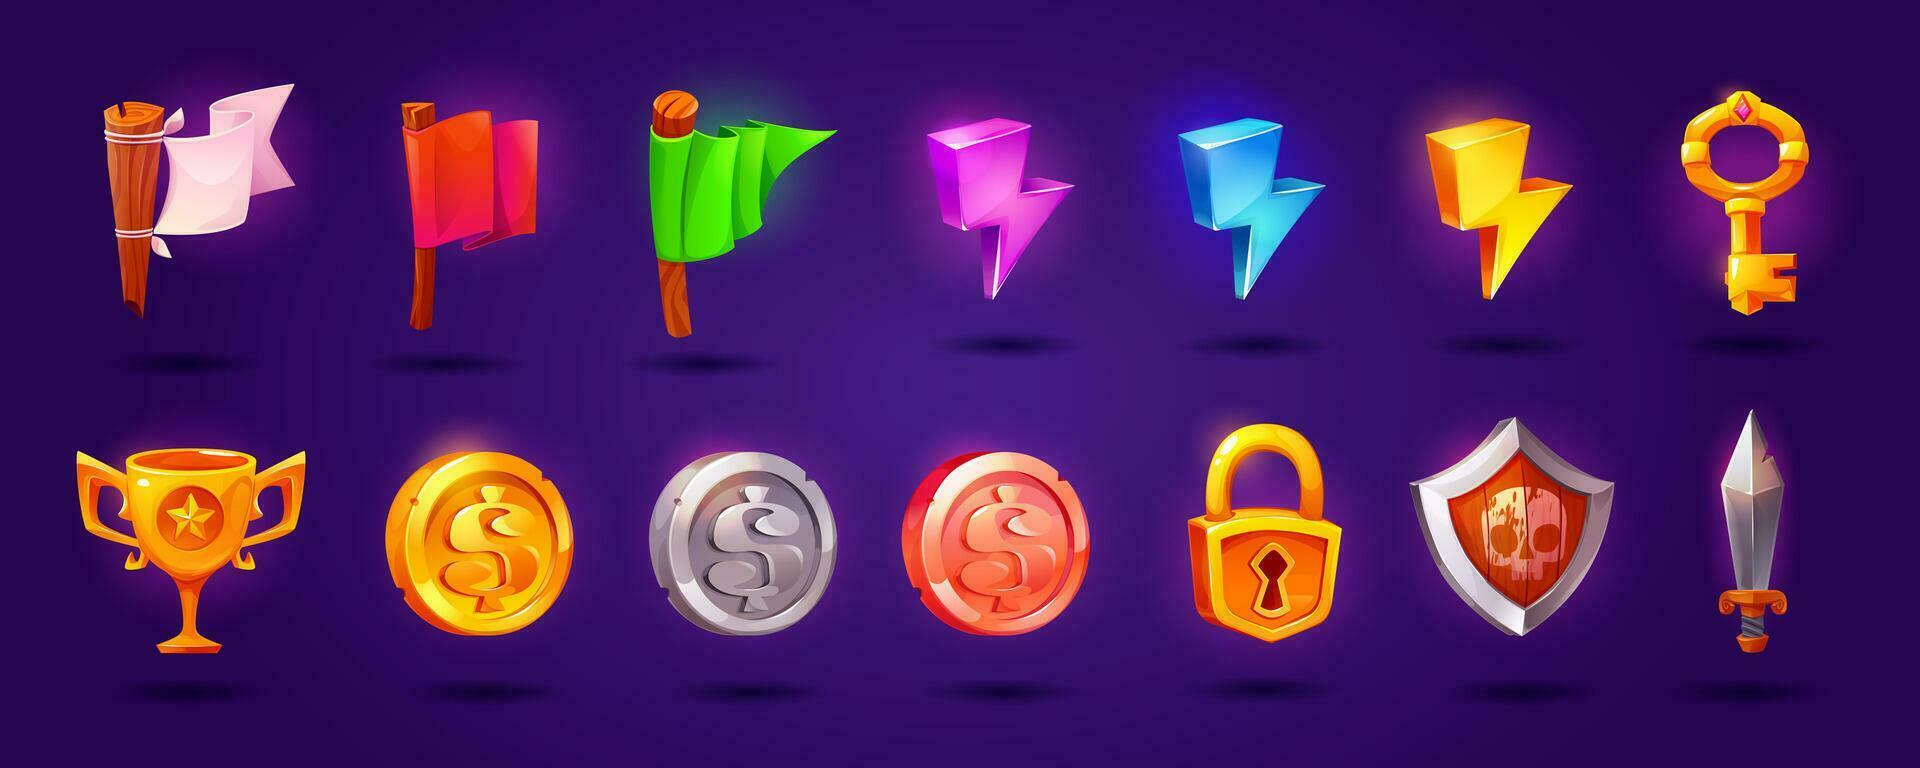 ui spel ikoner av mynt, nyckel, trofé, skydda, svärd vektor